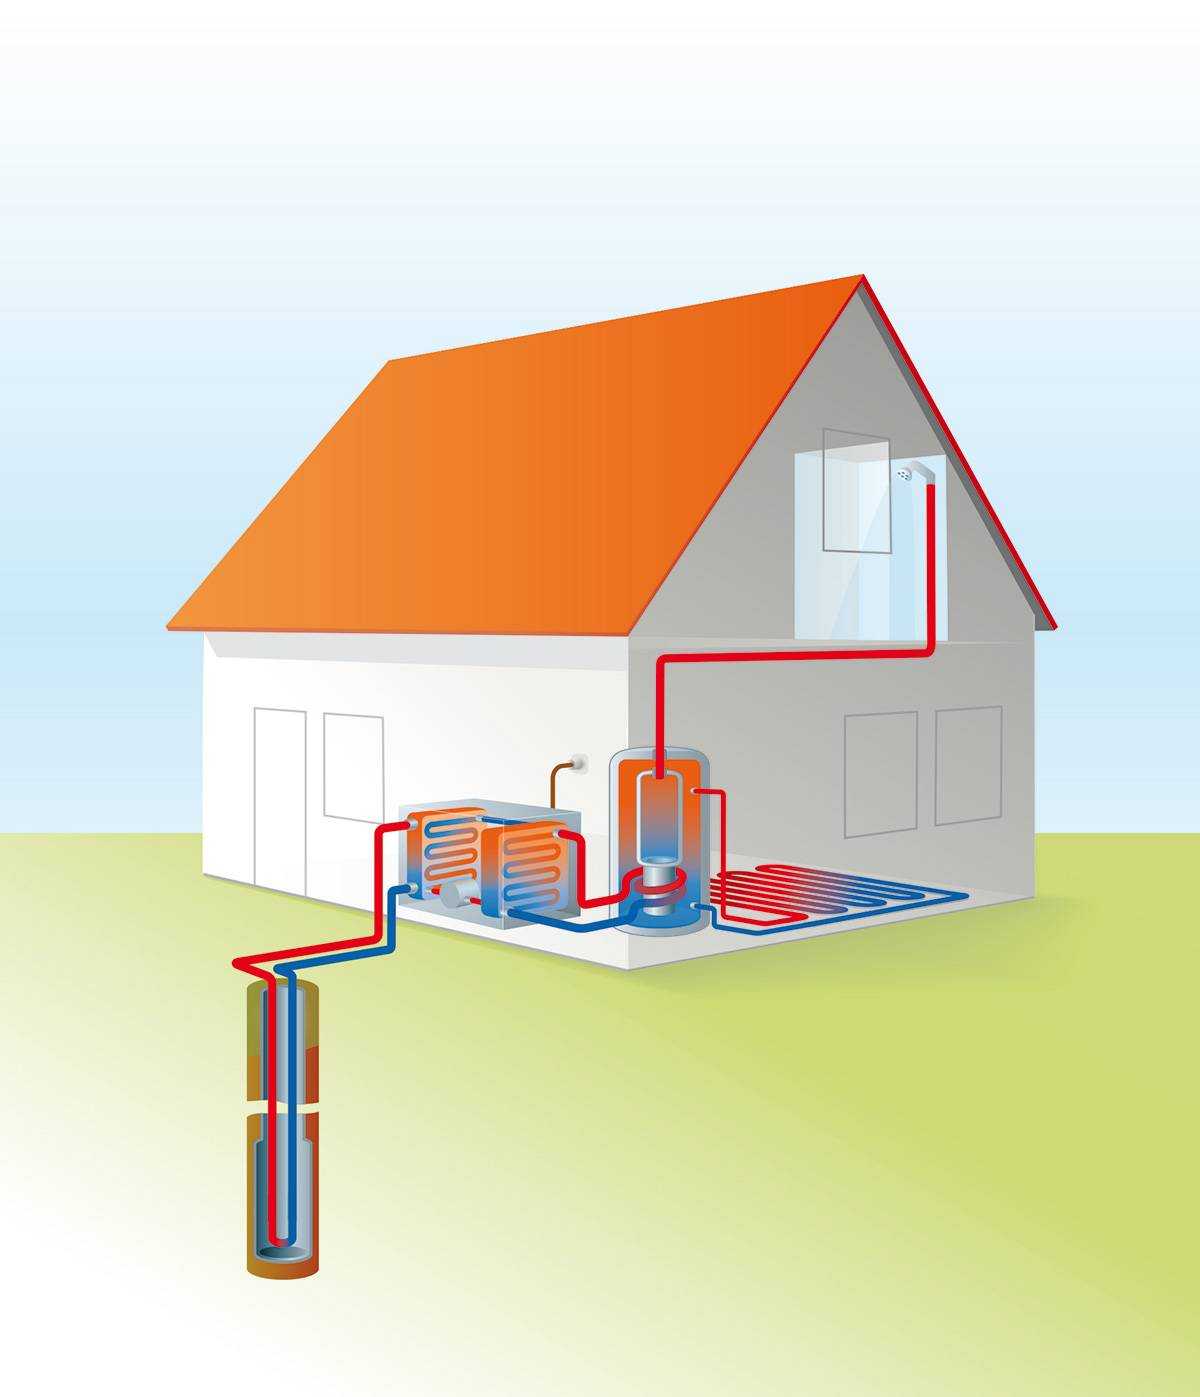 Системы геотермального отопления частных домов